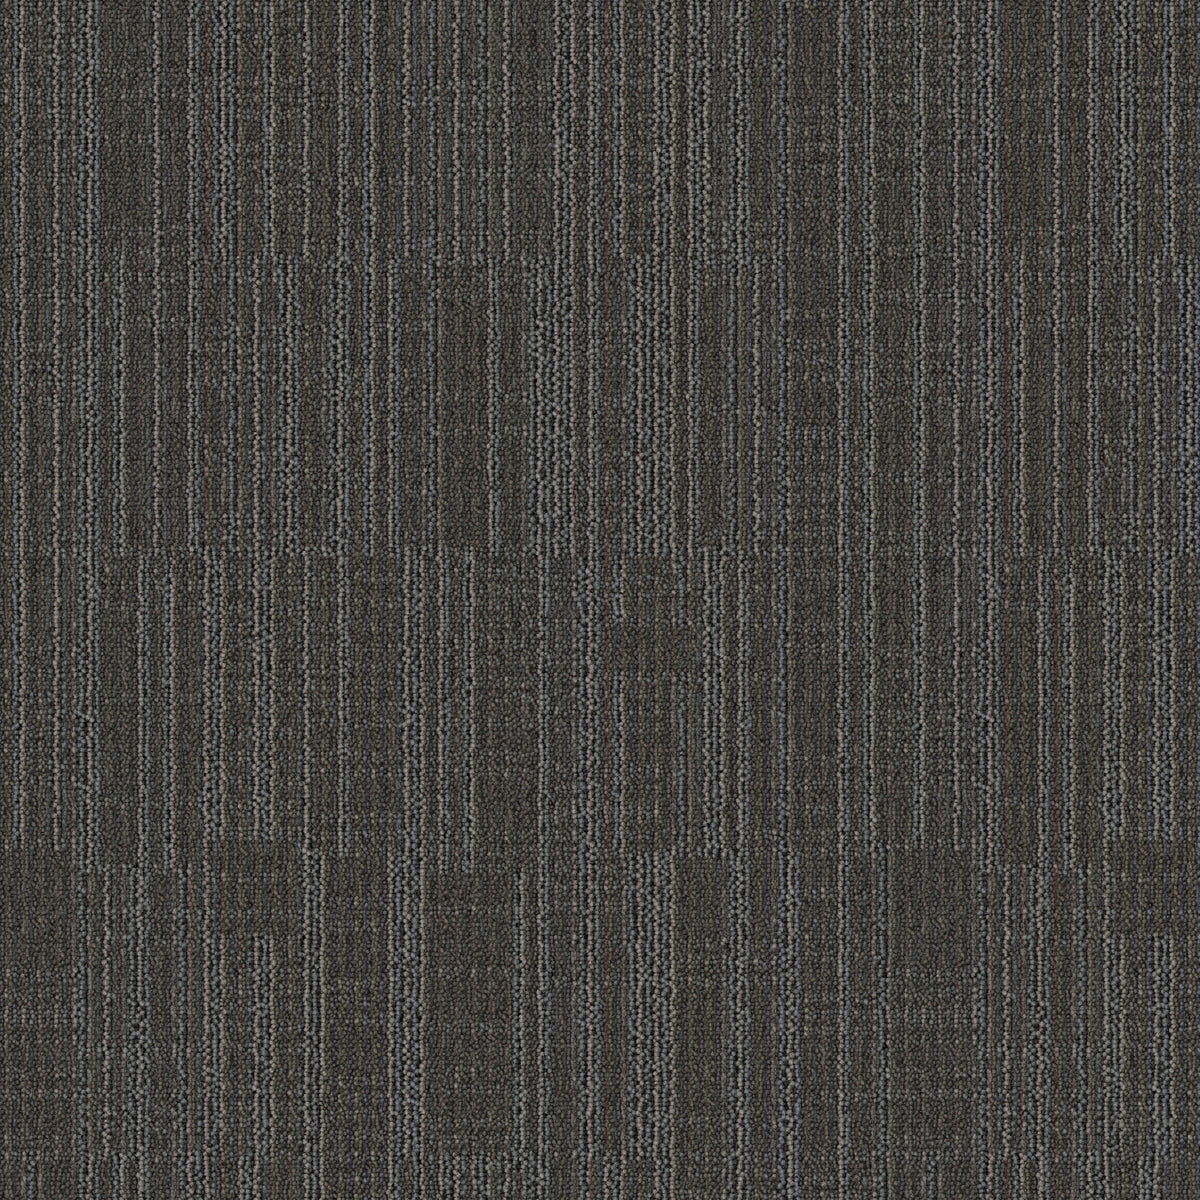 Mohawk Group - Bending Earth - Datum - Carpet Tile - Granite